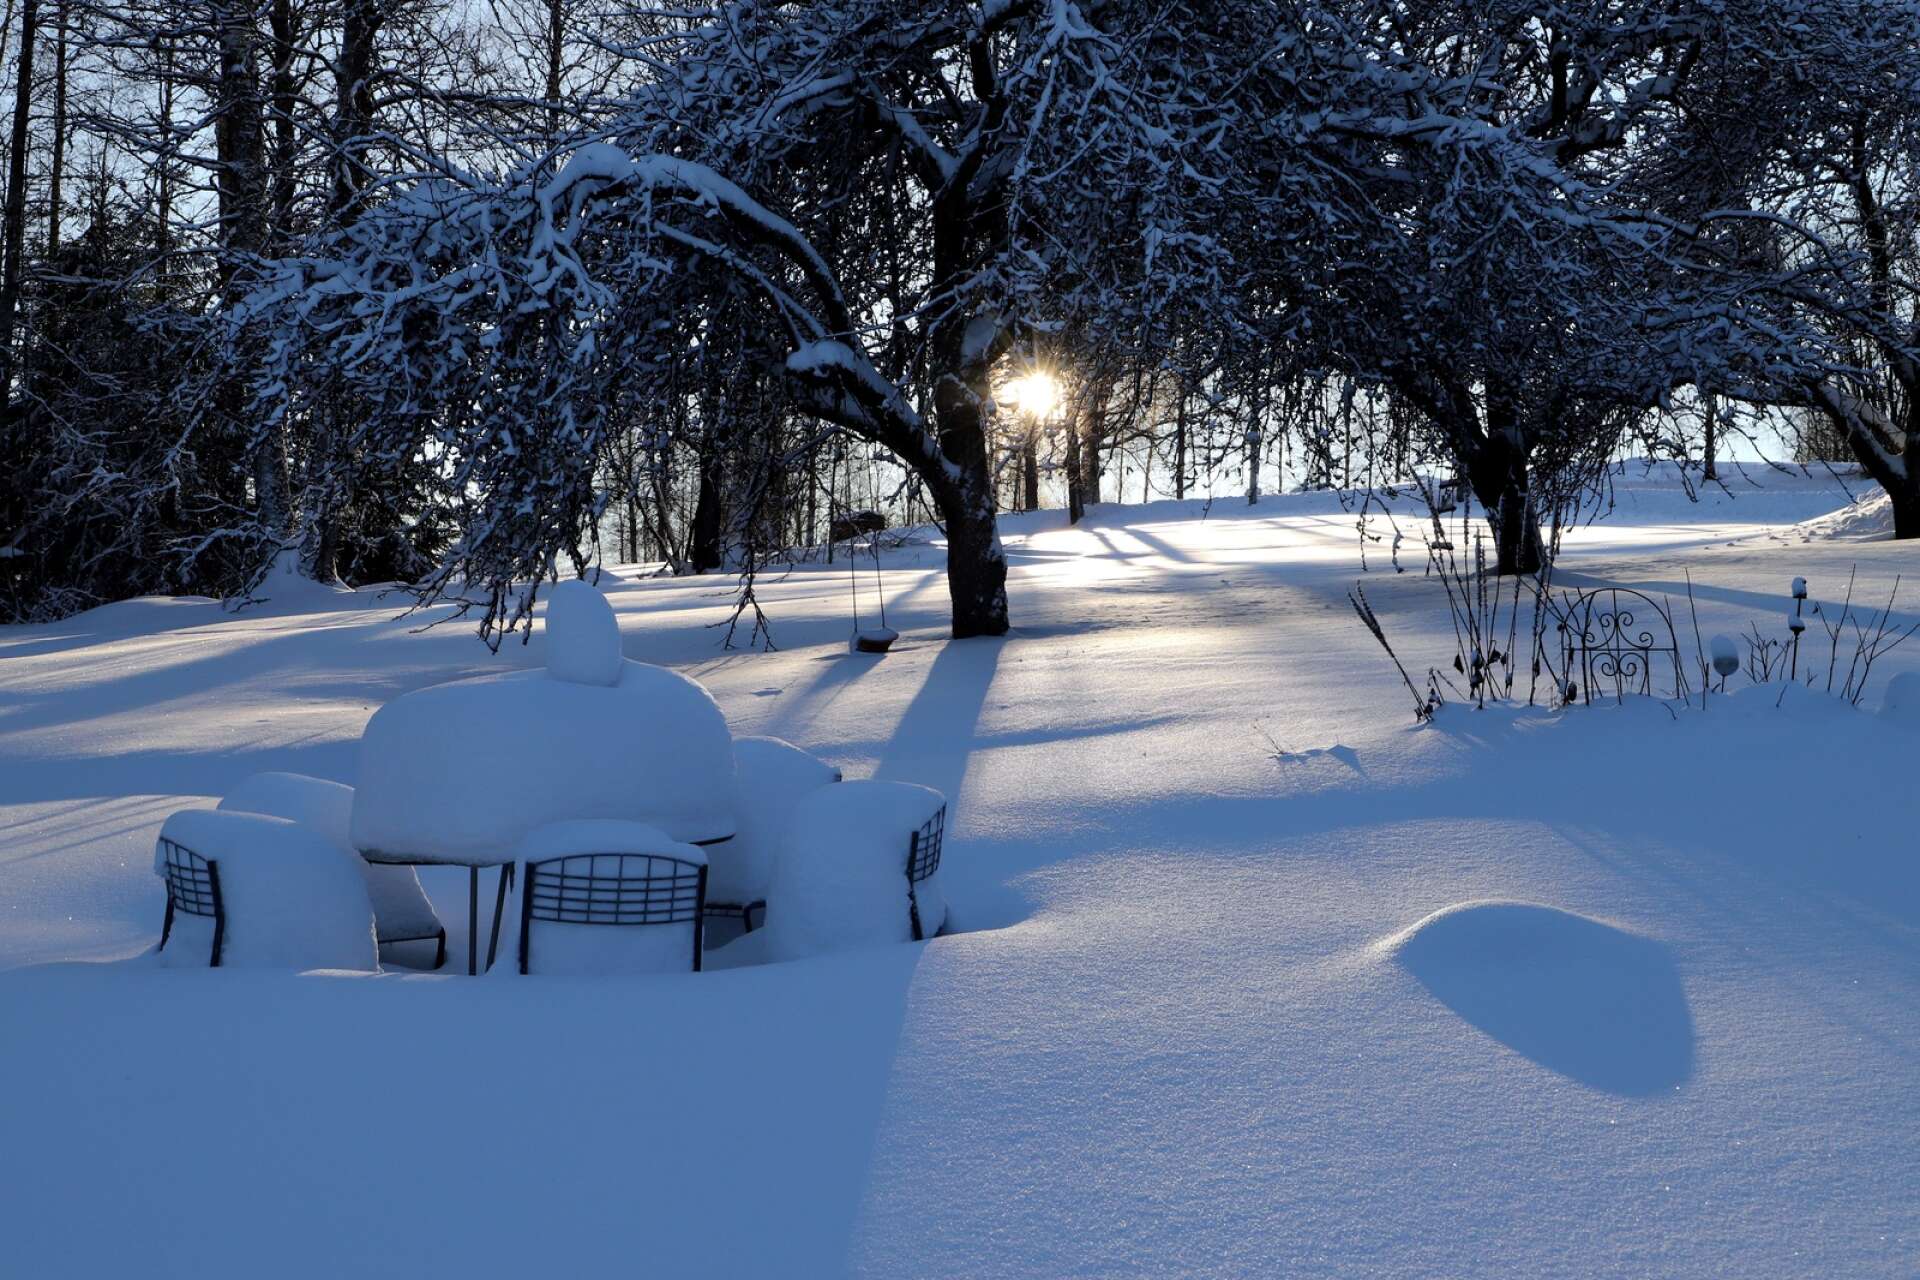 ”Snart är det vår!” hävdar Ulla Grönqvist, men visst känns det väl ganska långt borta i snön, även om solen lyser starkt.